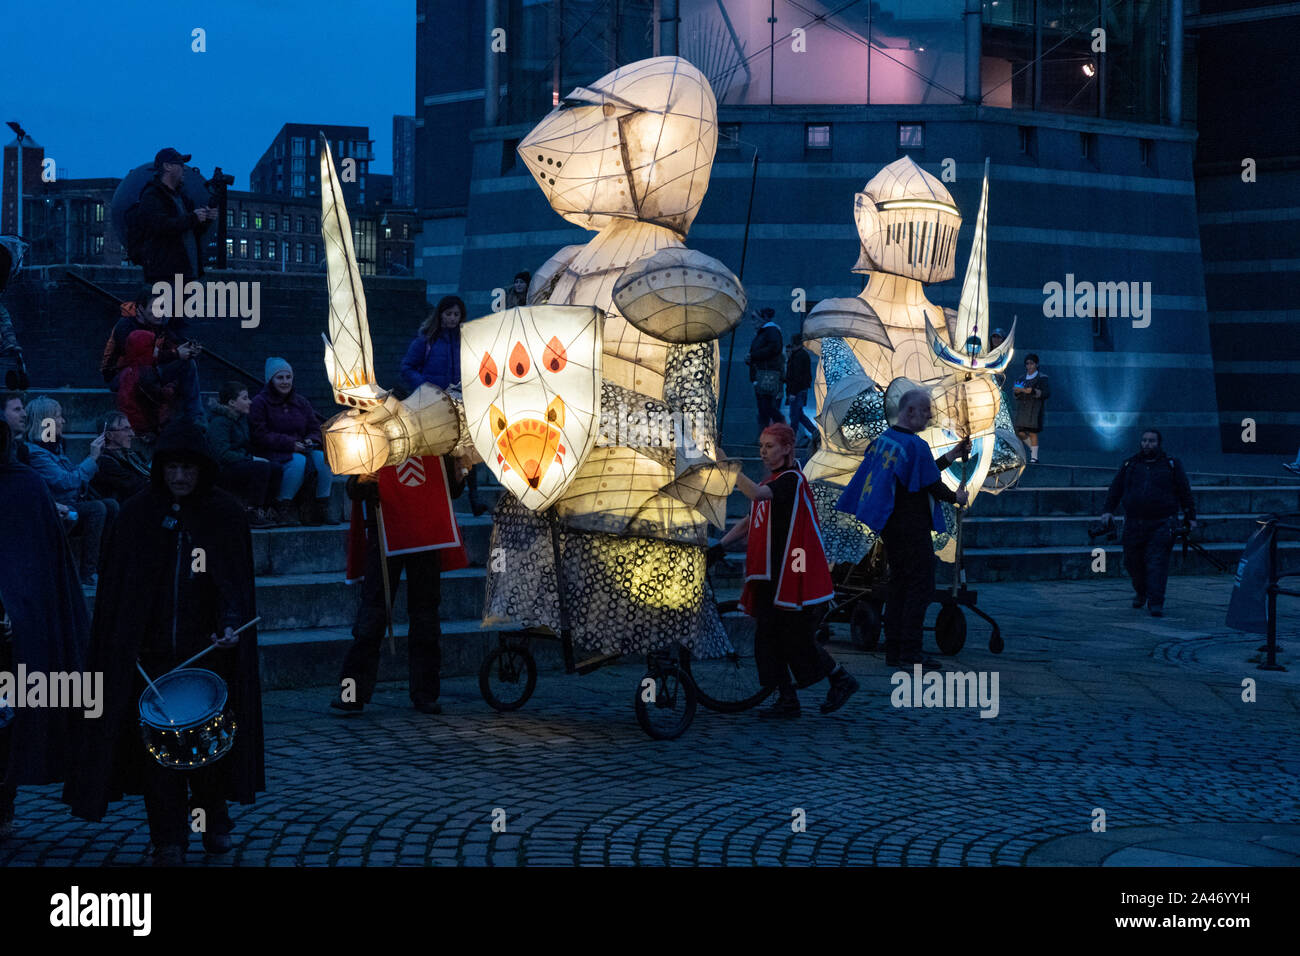 À Dusk, des chevaliers lumineux géants se sont produit lors d'un événement public en direct. À côté du musée Royal Armouries, Leeds, West Yorkshire, Angleterre, Royaume-Uni. Banque D'Images